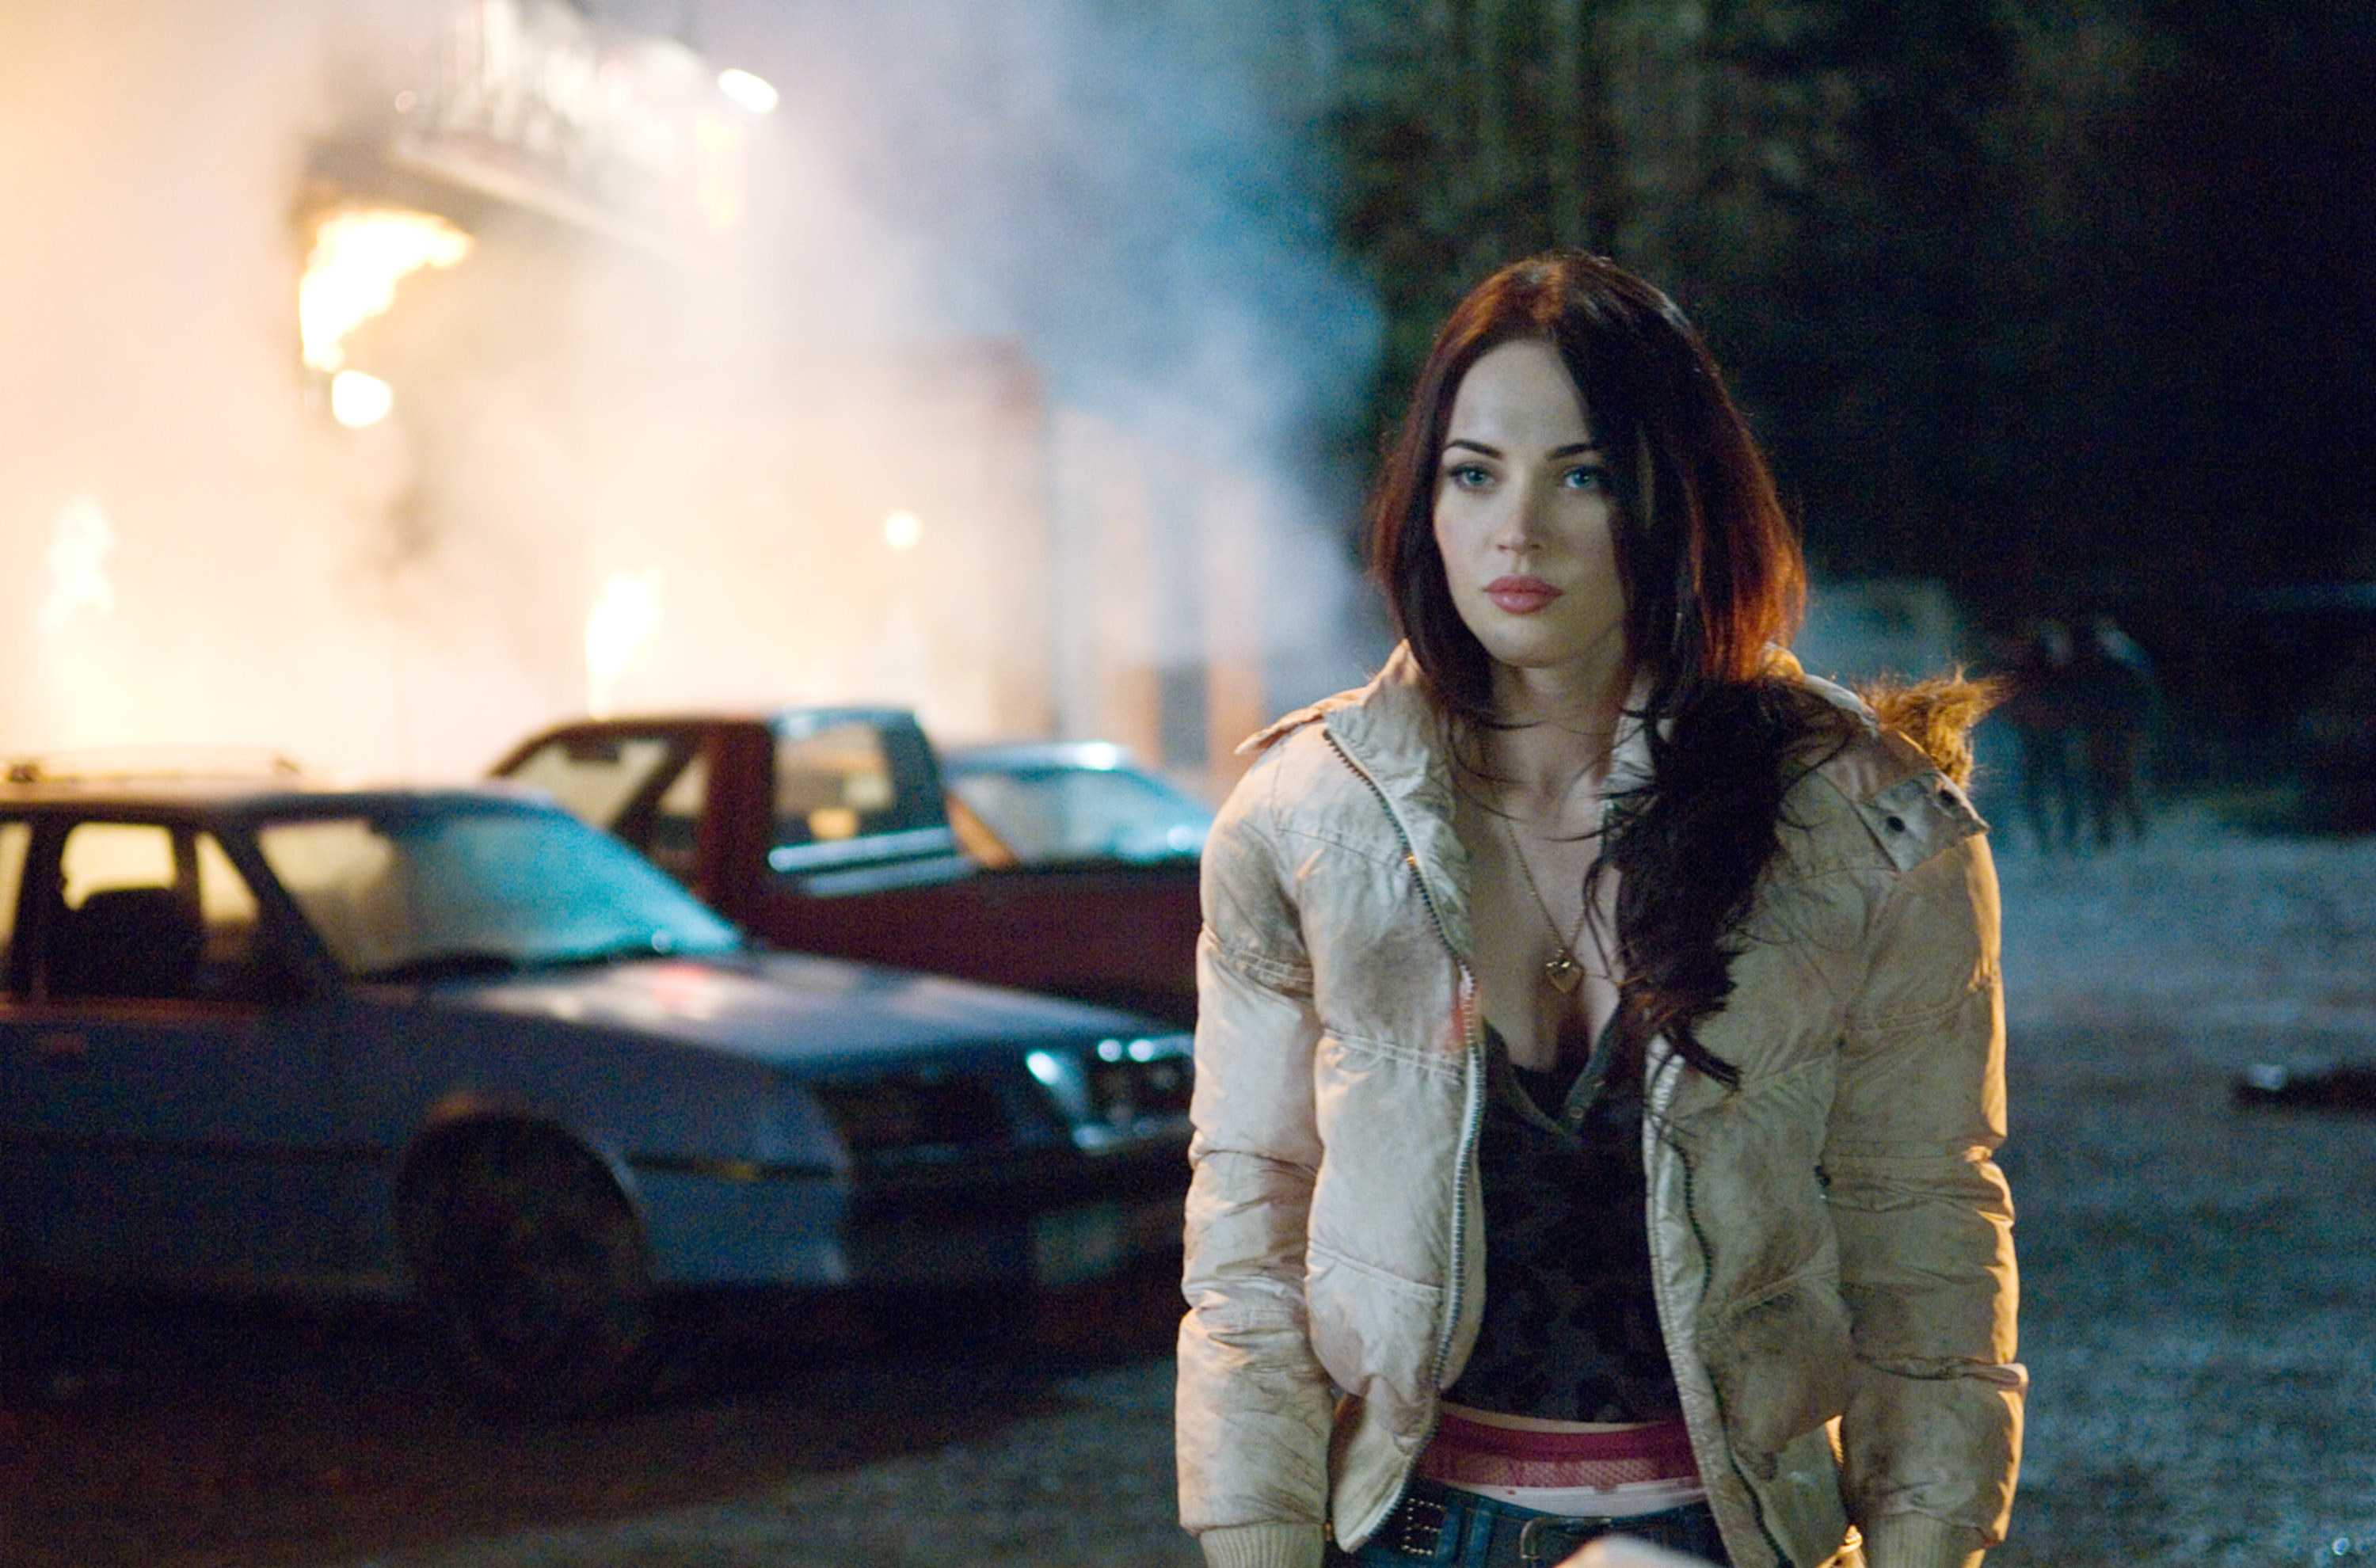 Megan Fox walks by burning cars